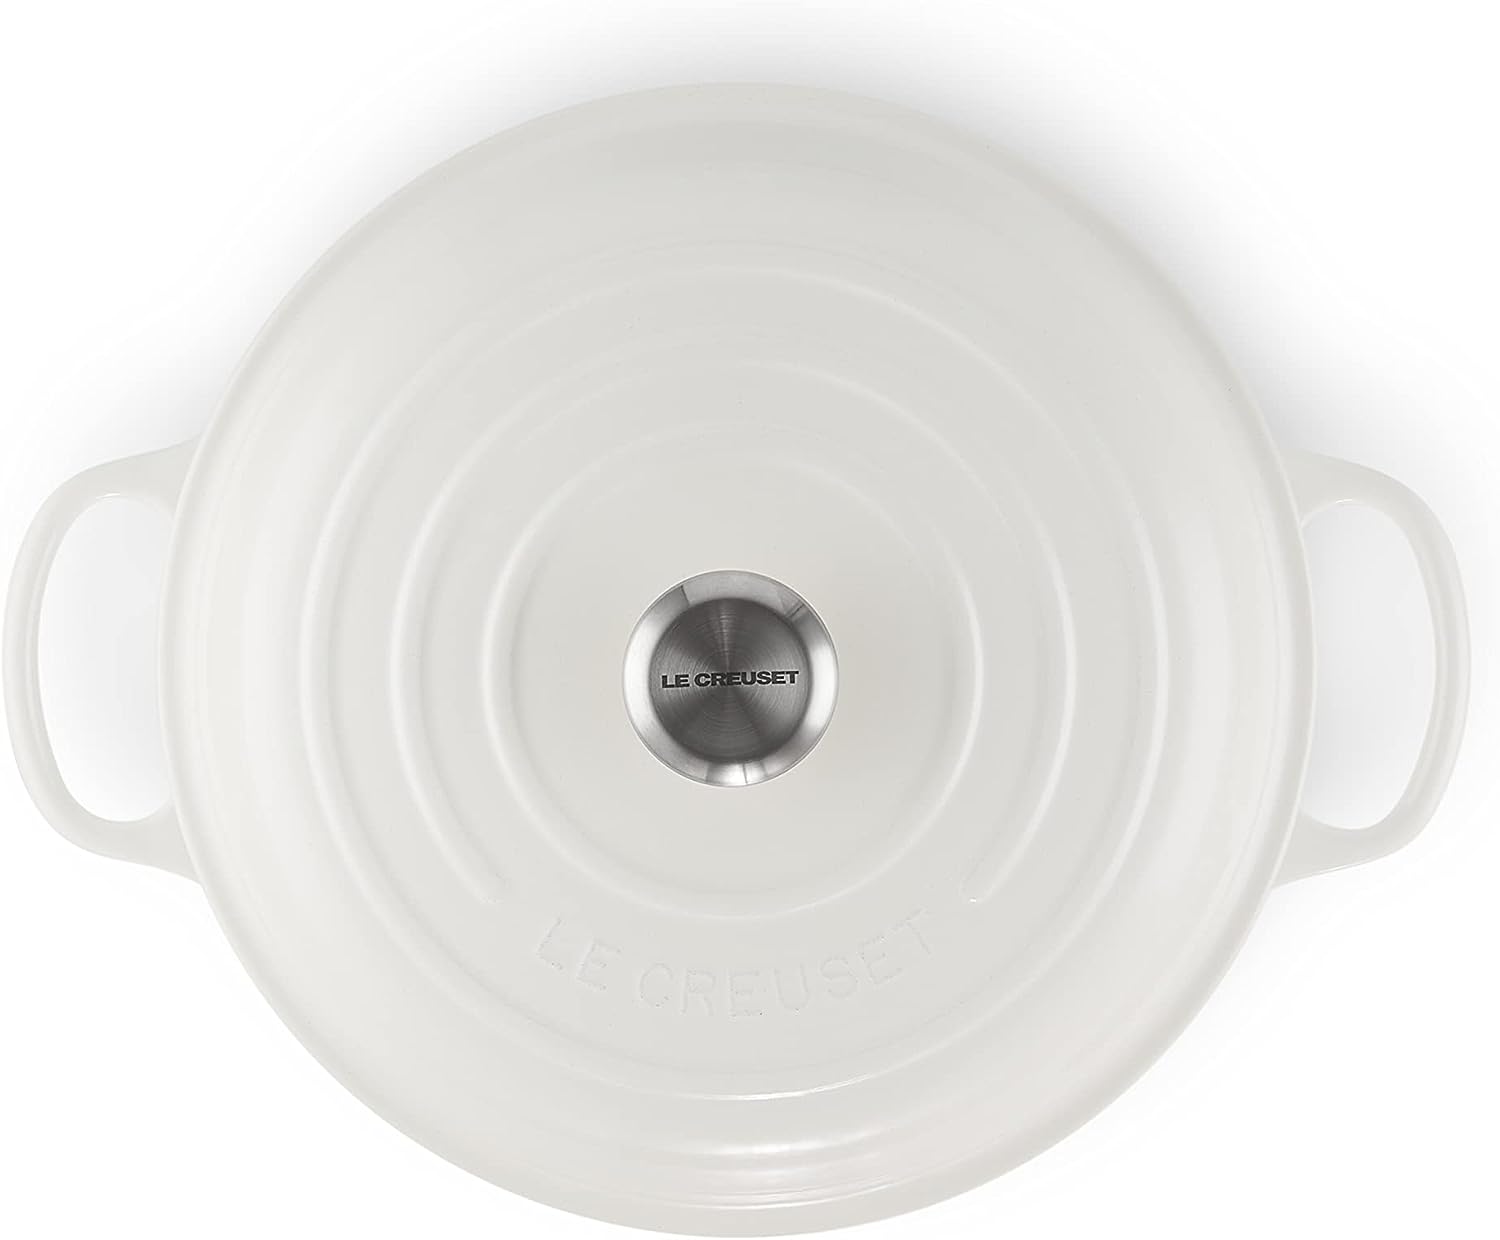 Le Creuset 5 Piece Cast Iron Cookware Set - White - Loft410